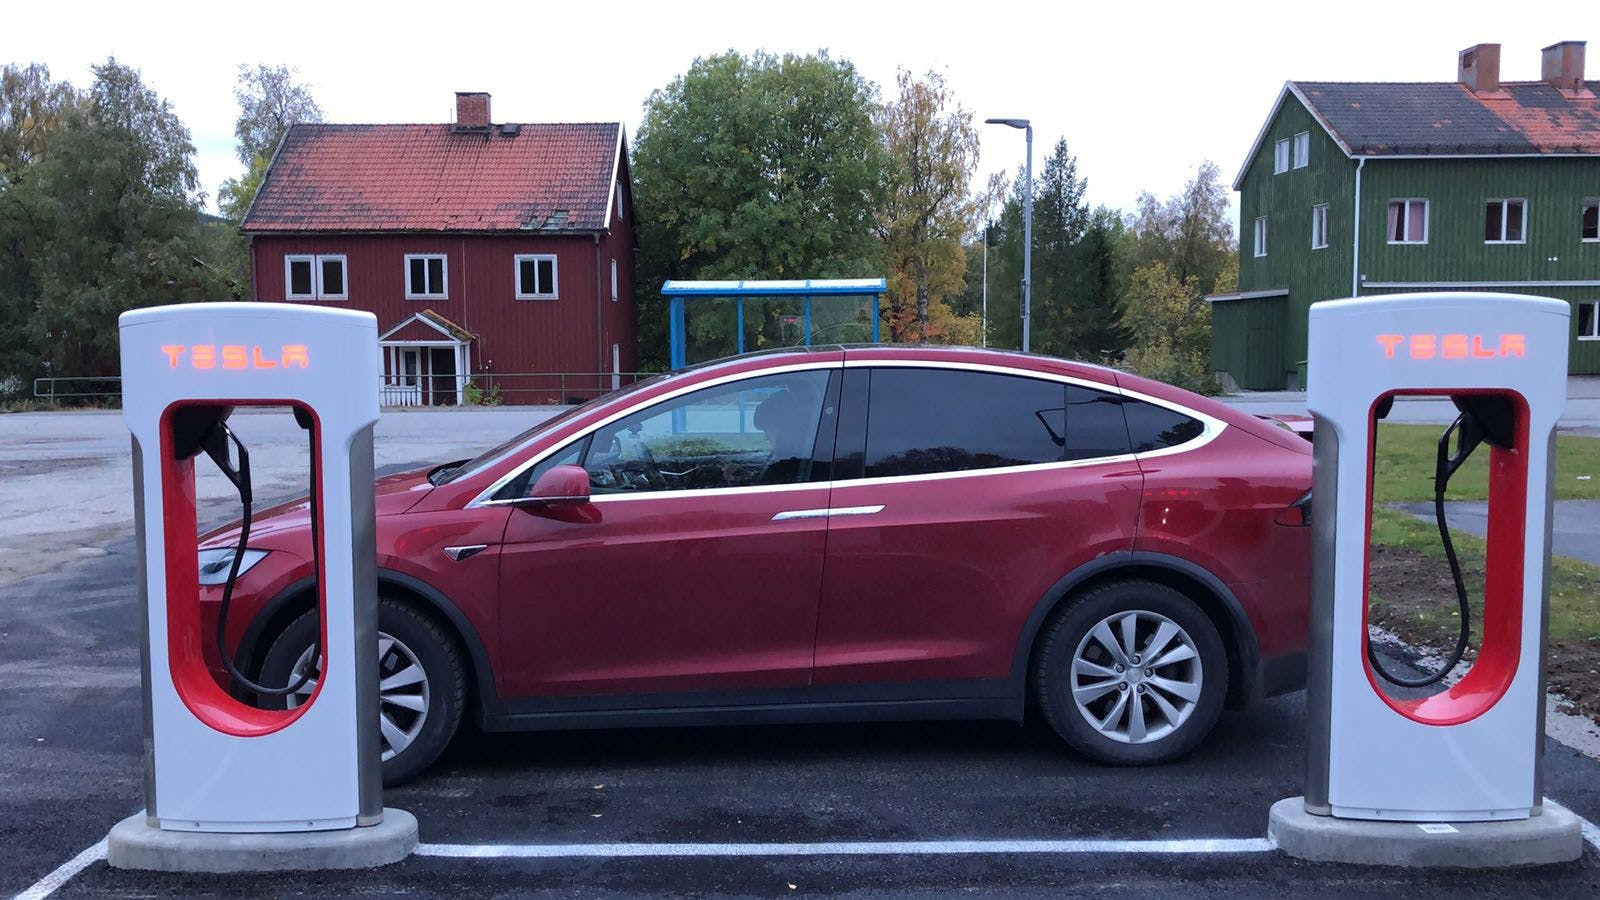 Tesla öppnar laddstation i norr - lättare köpa elbil